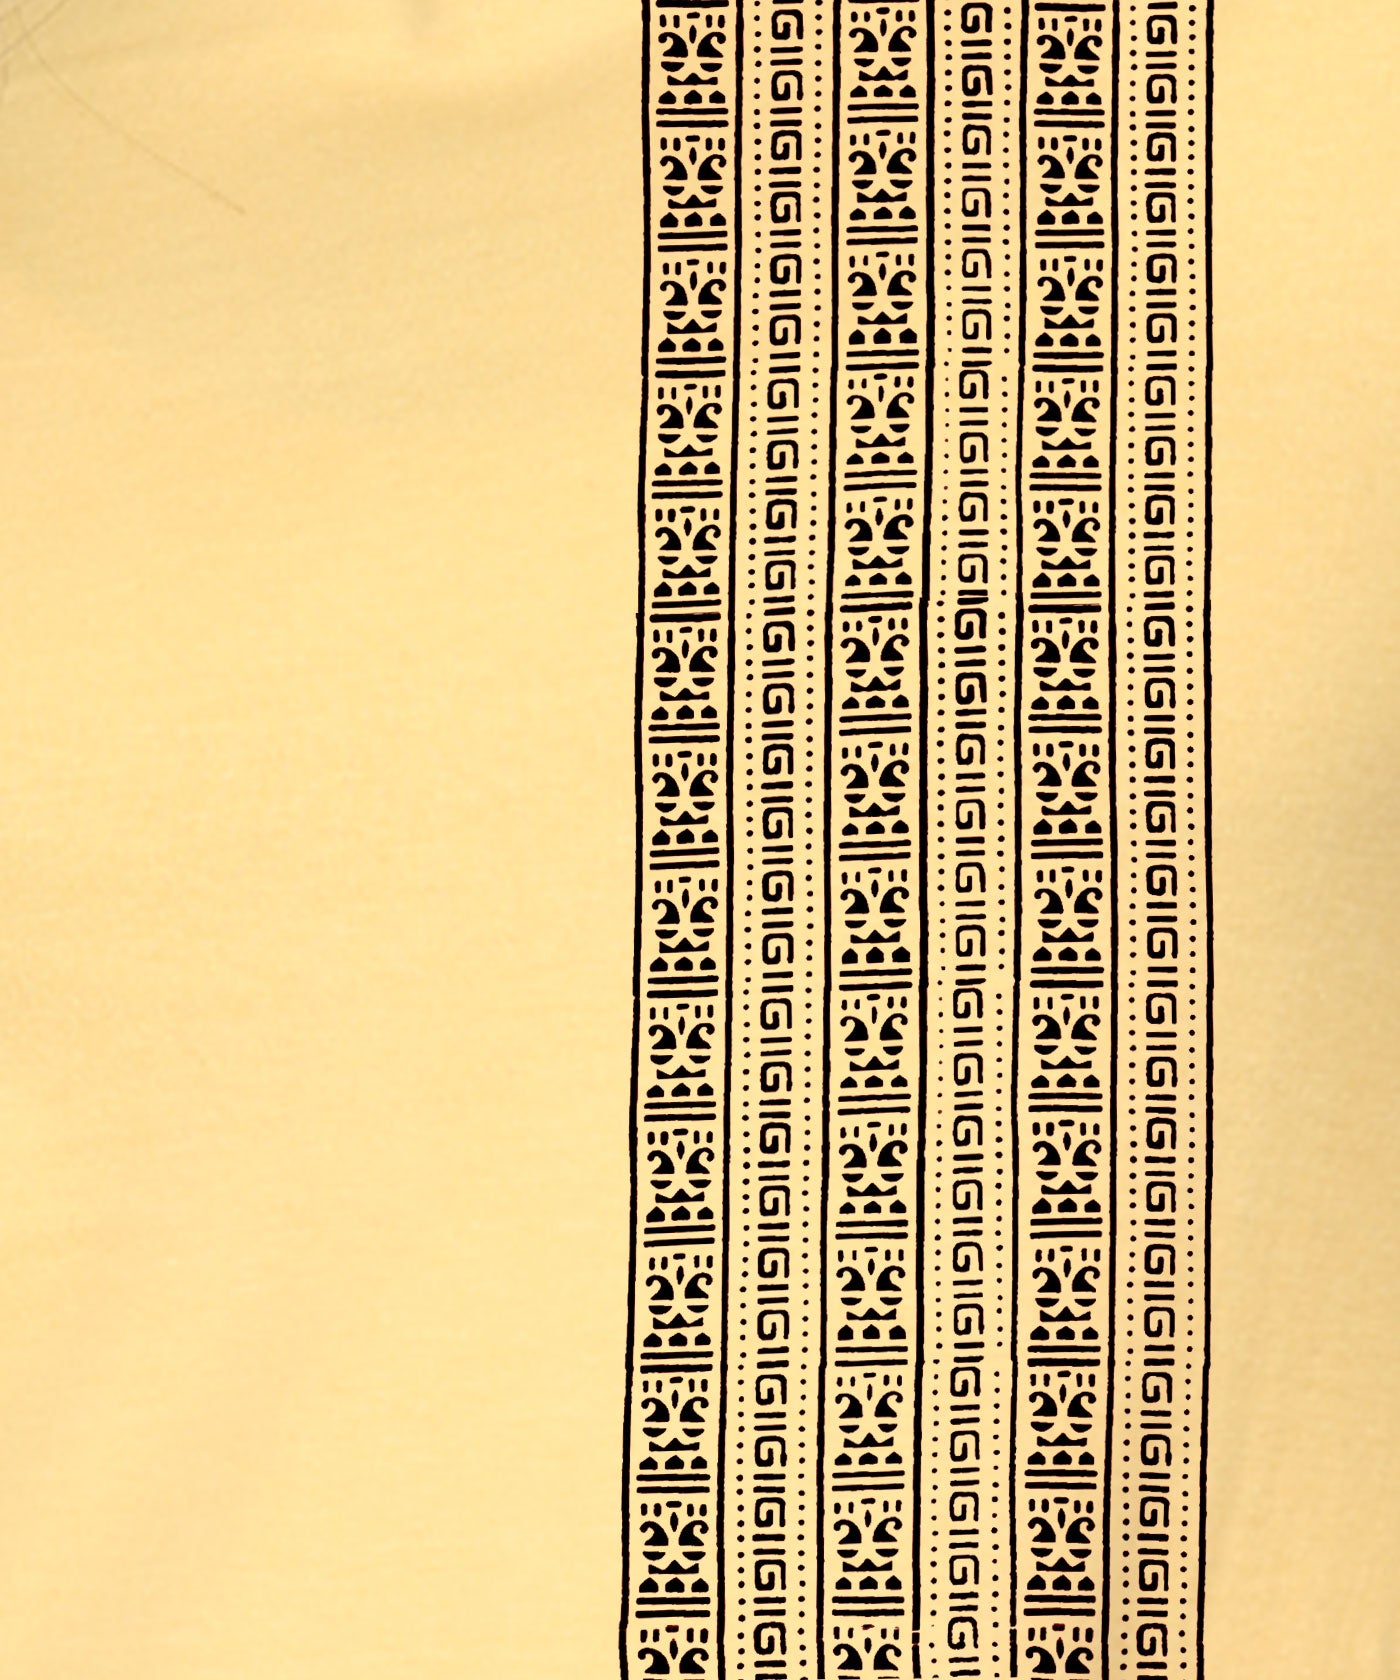 Lines - Block Print Tees for Women - Golden Yellow